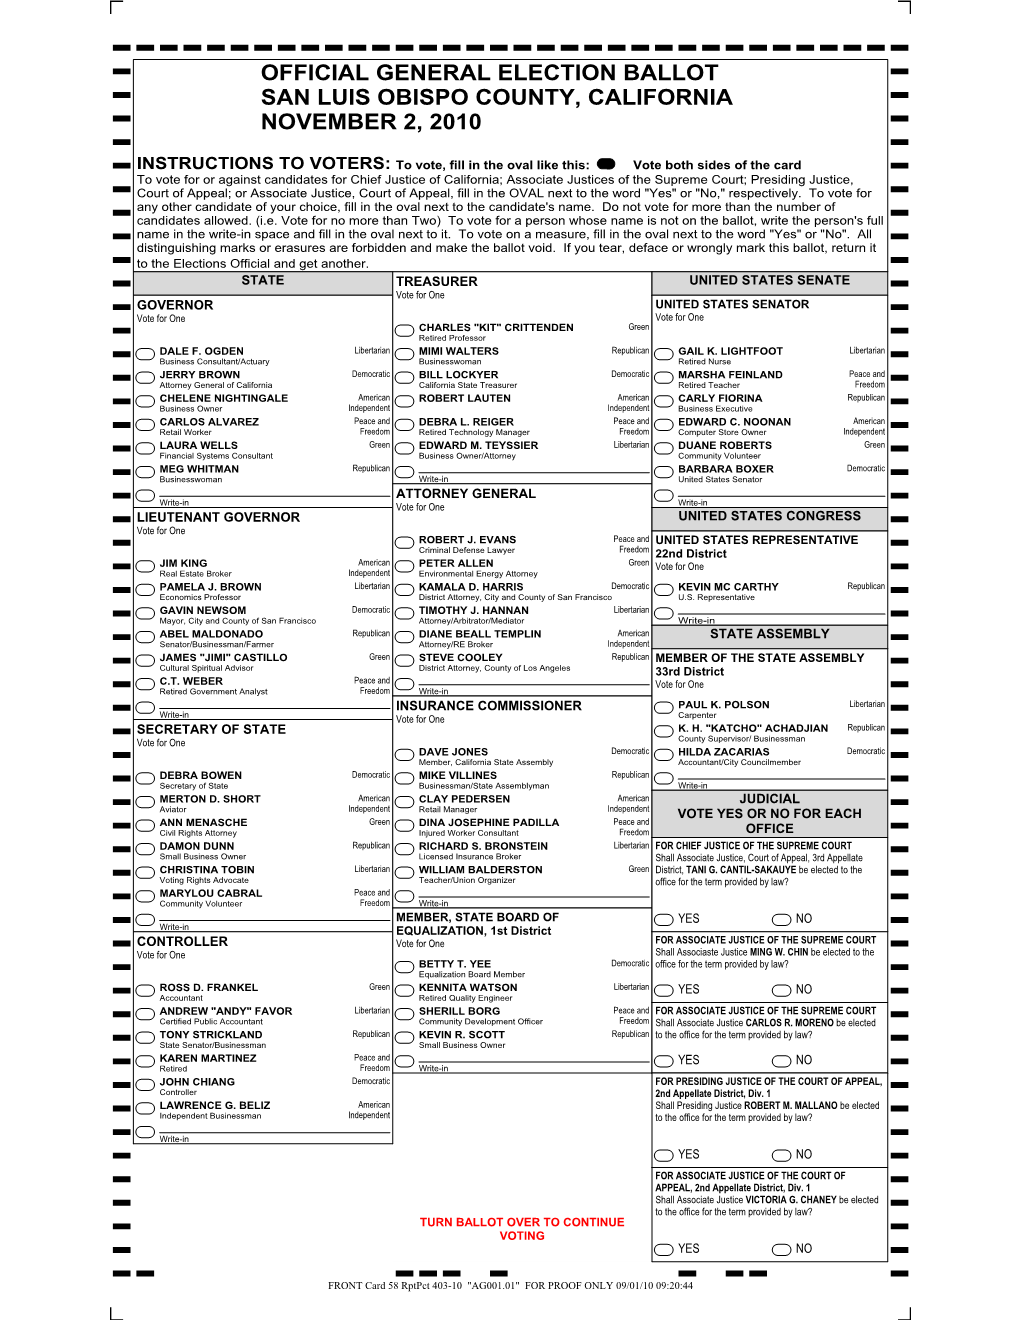 Official General Election Ballot San Luis Obispo County, California November 2, 2010